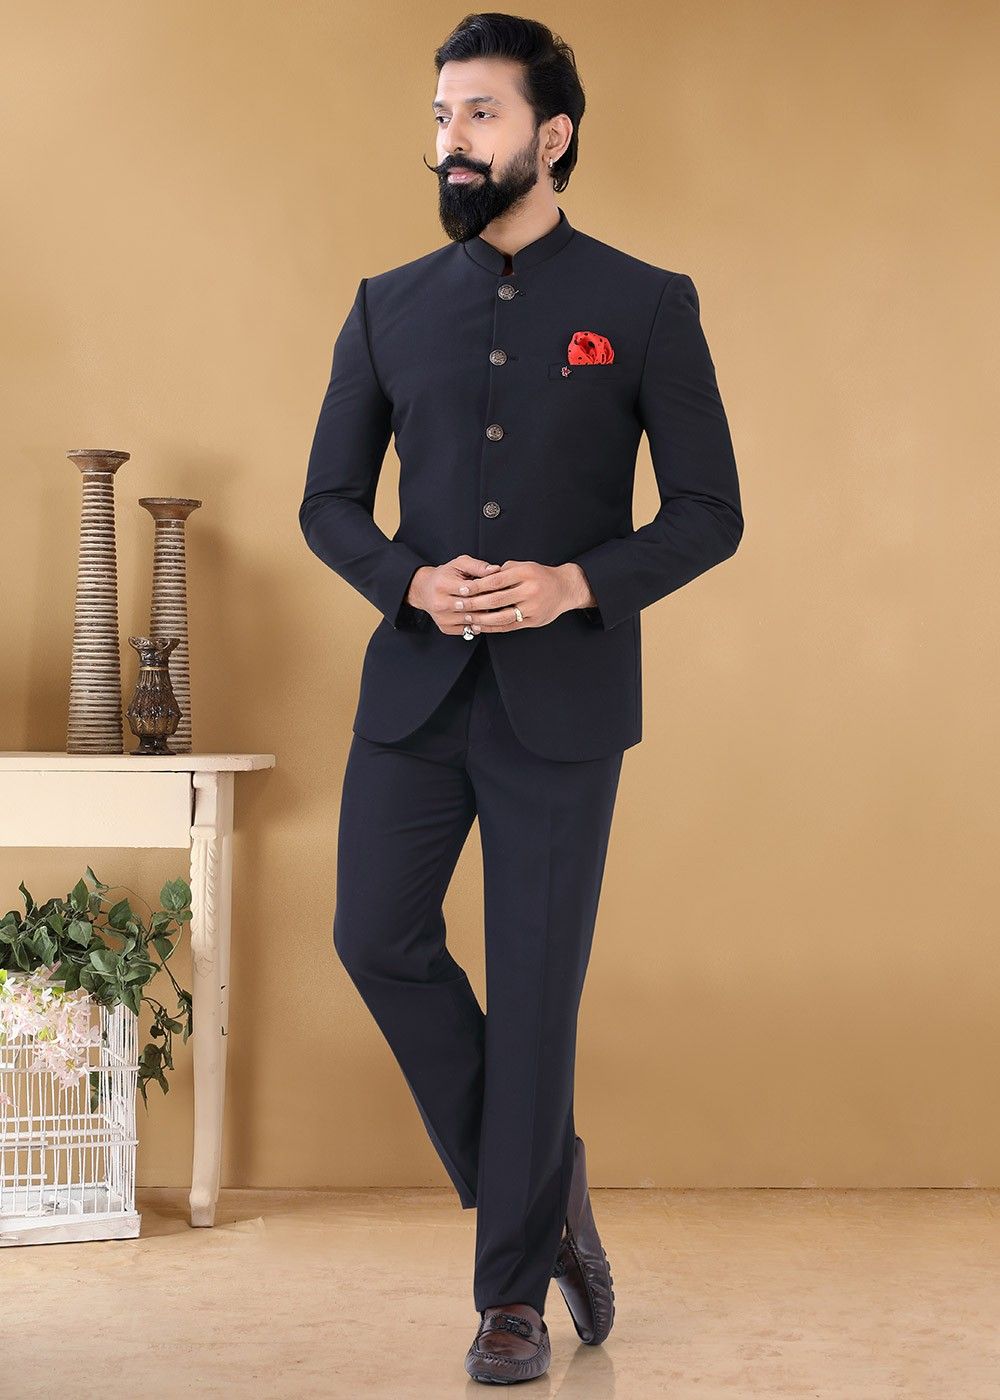 Black Color Function Wear Trendy Jodhpuri Suit For Men In Fancy Fabric-gemektower.com.vn